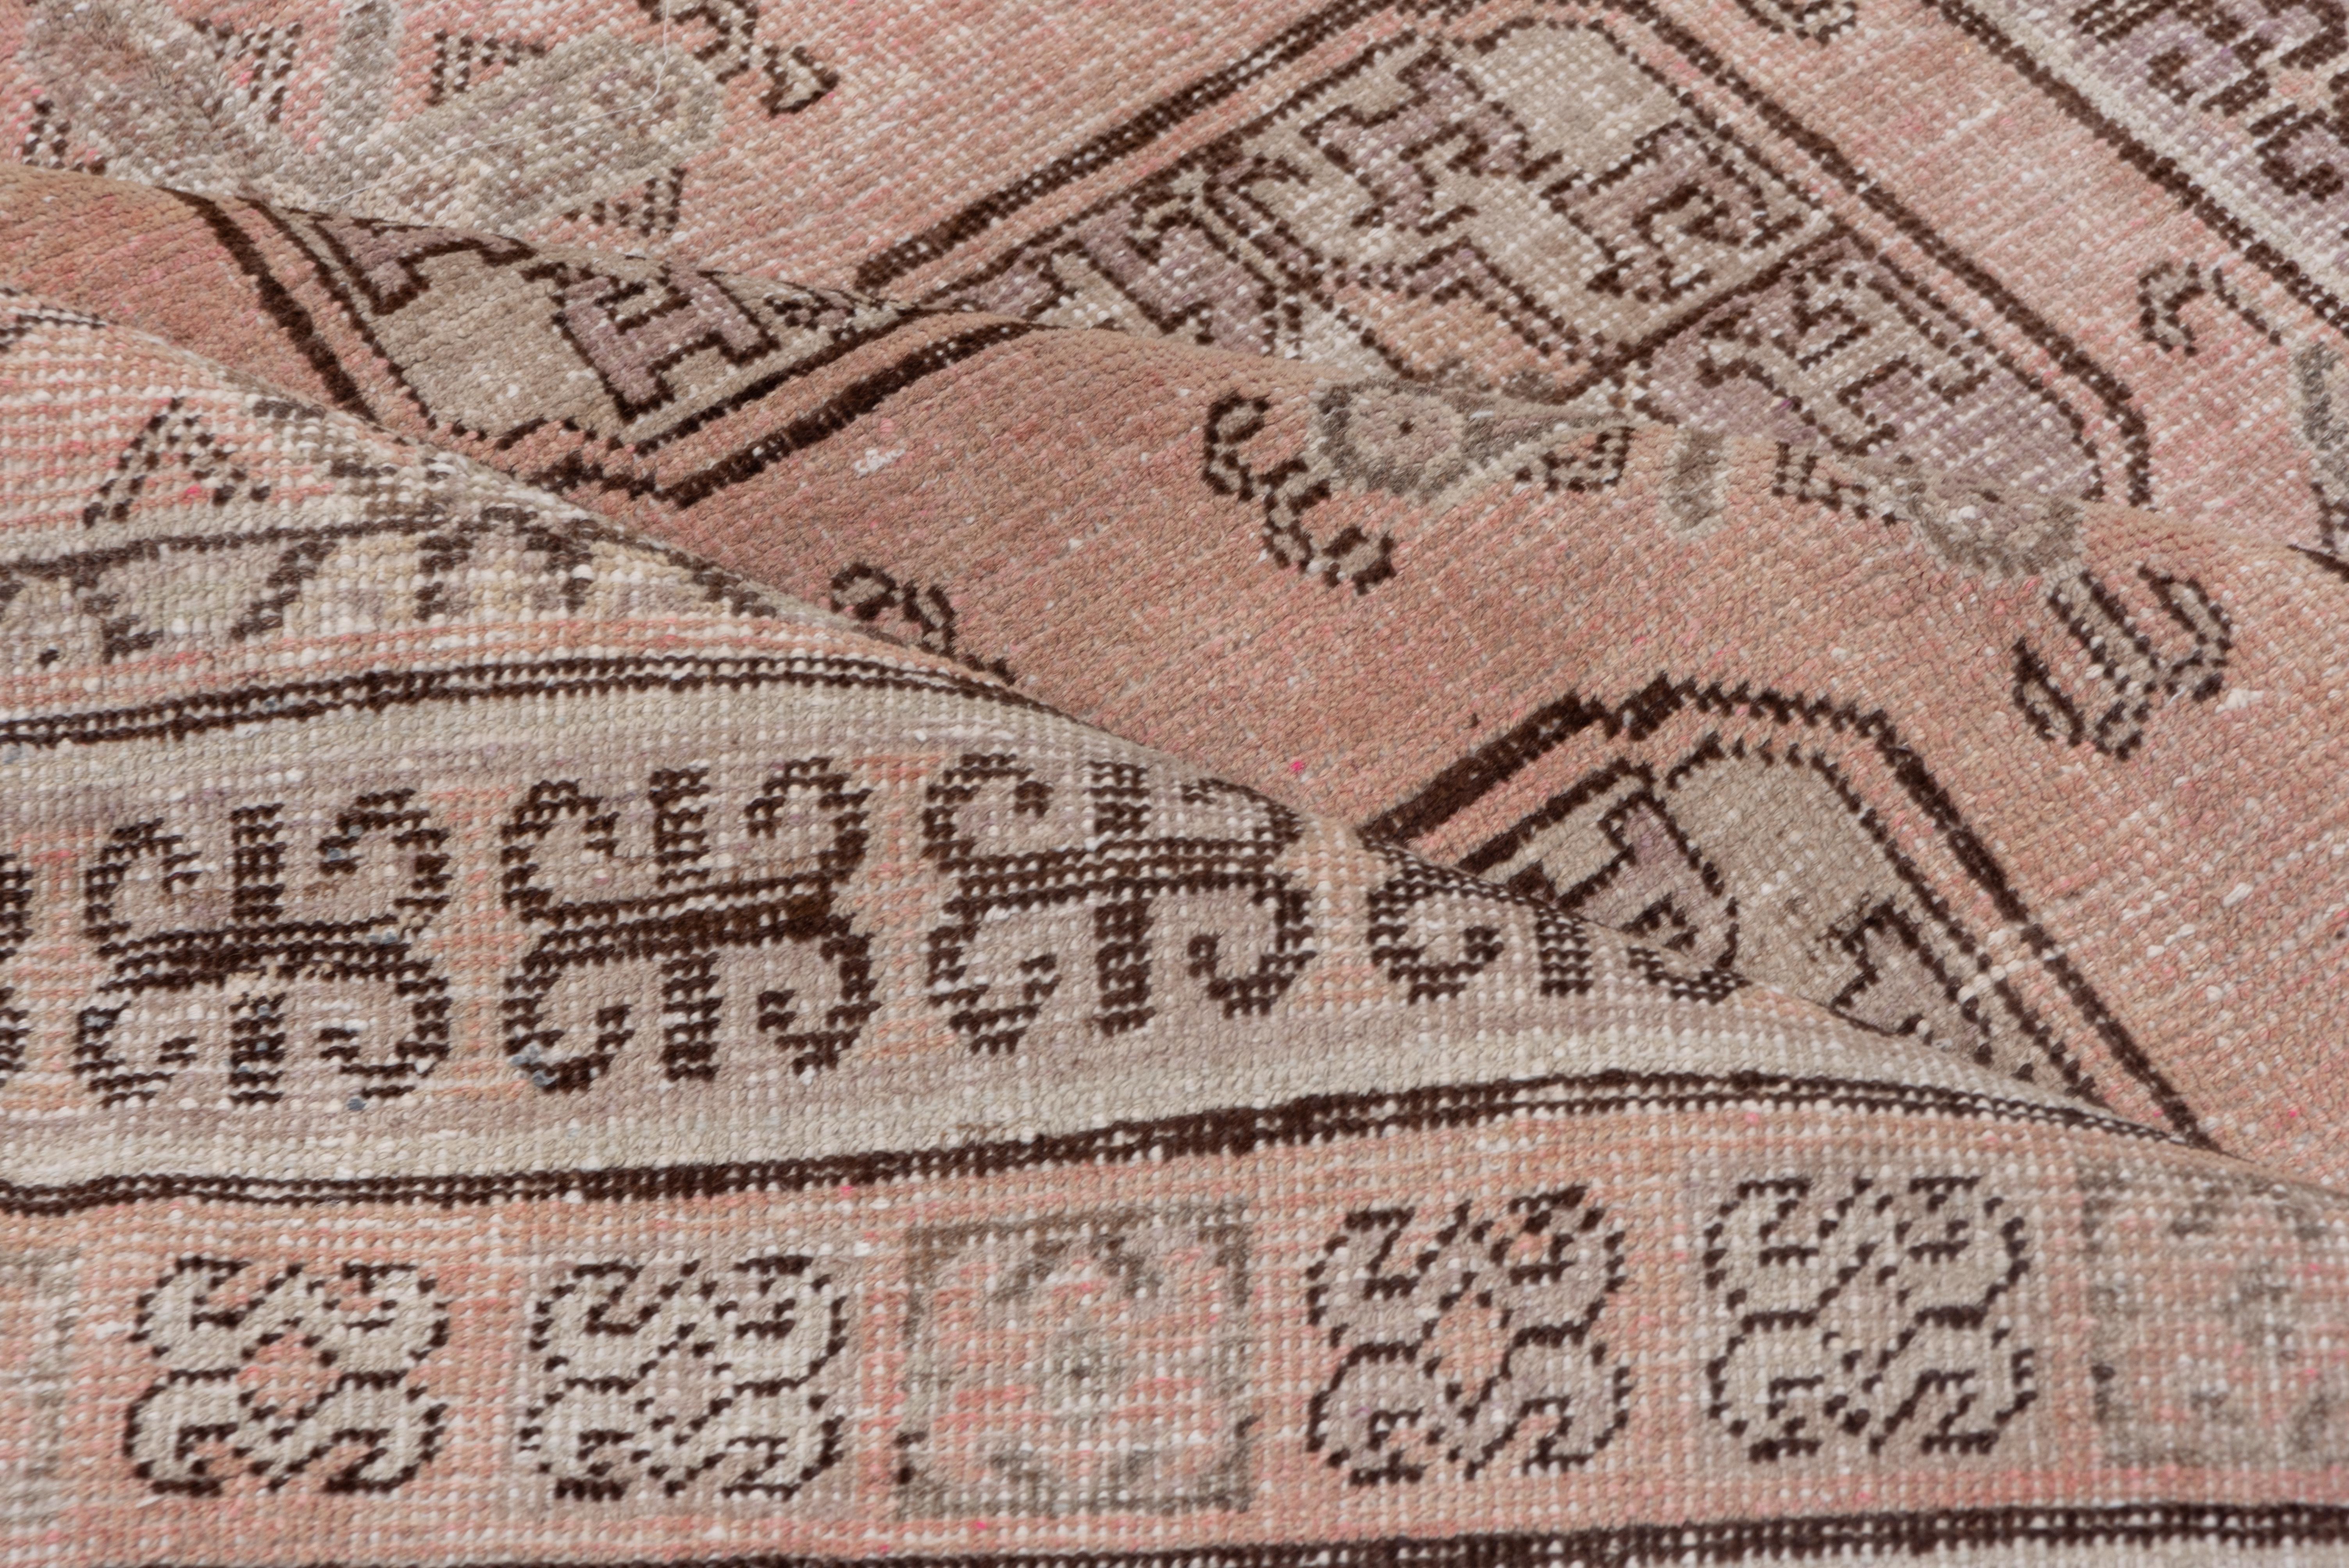 Dieses rosafarbene Feld aus Ostturkestan zeigt ein turkmenisches Allover-Muster aus vier Säulen mit siebeneinhalb Reihen von achteckigen, geviertelten Guls, dazwischen befinden sich kleinere, kreuzförmige Guls. Turkmenischer Stil, schmale